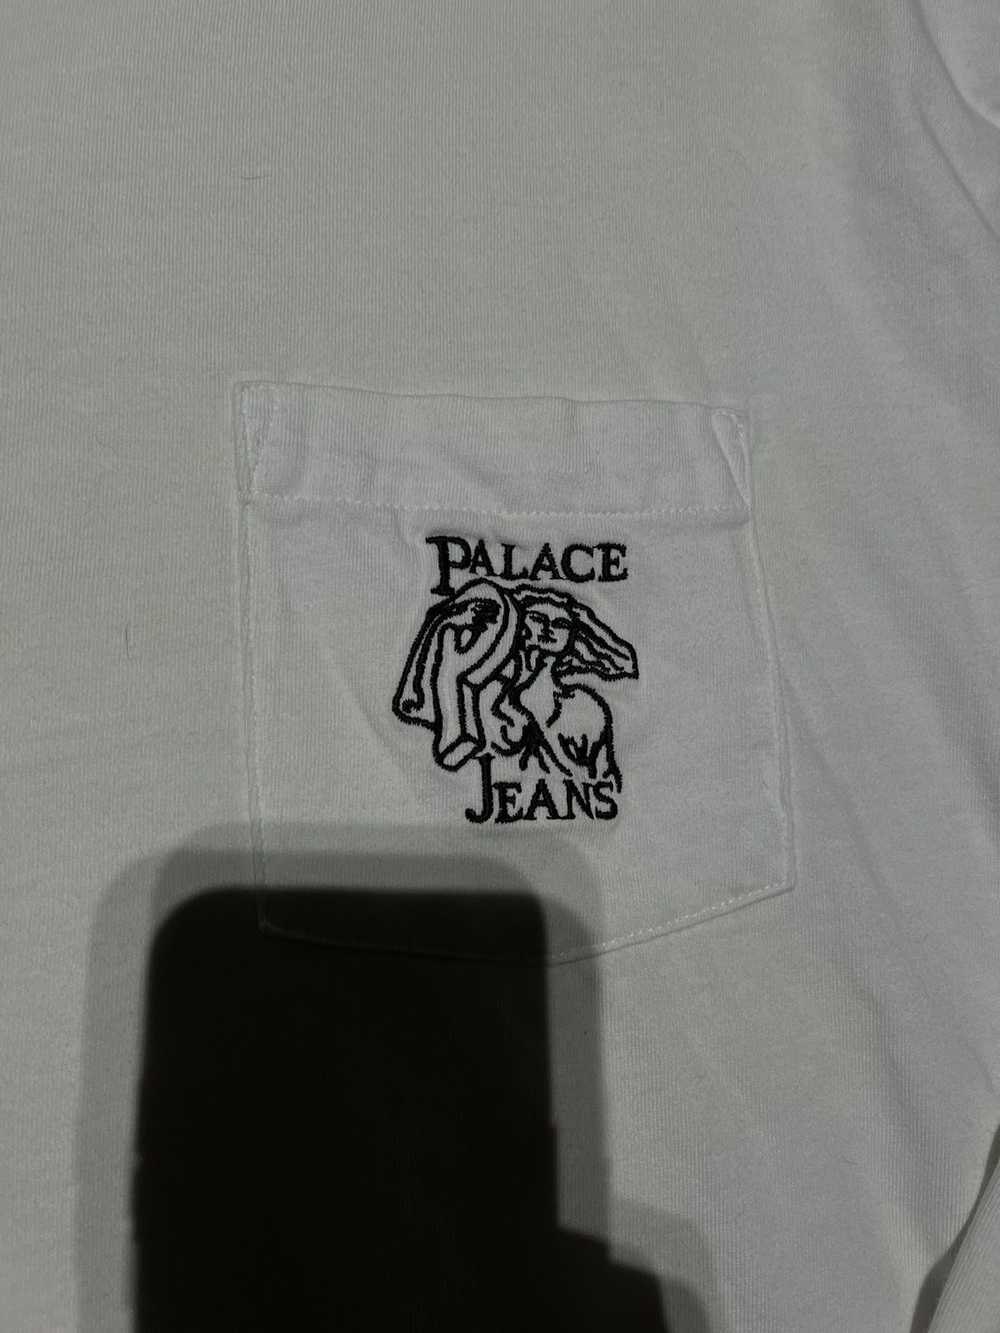 Palace Palace P Jeans Pocket Longsleeve TShirt - image 2